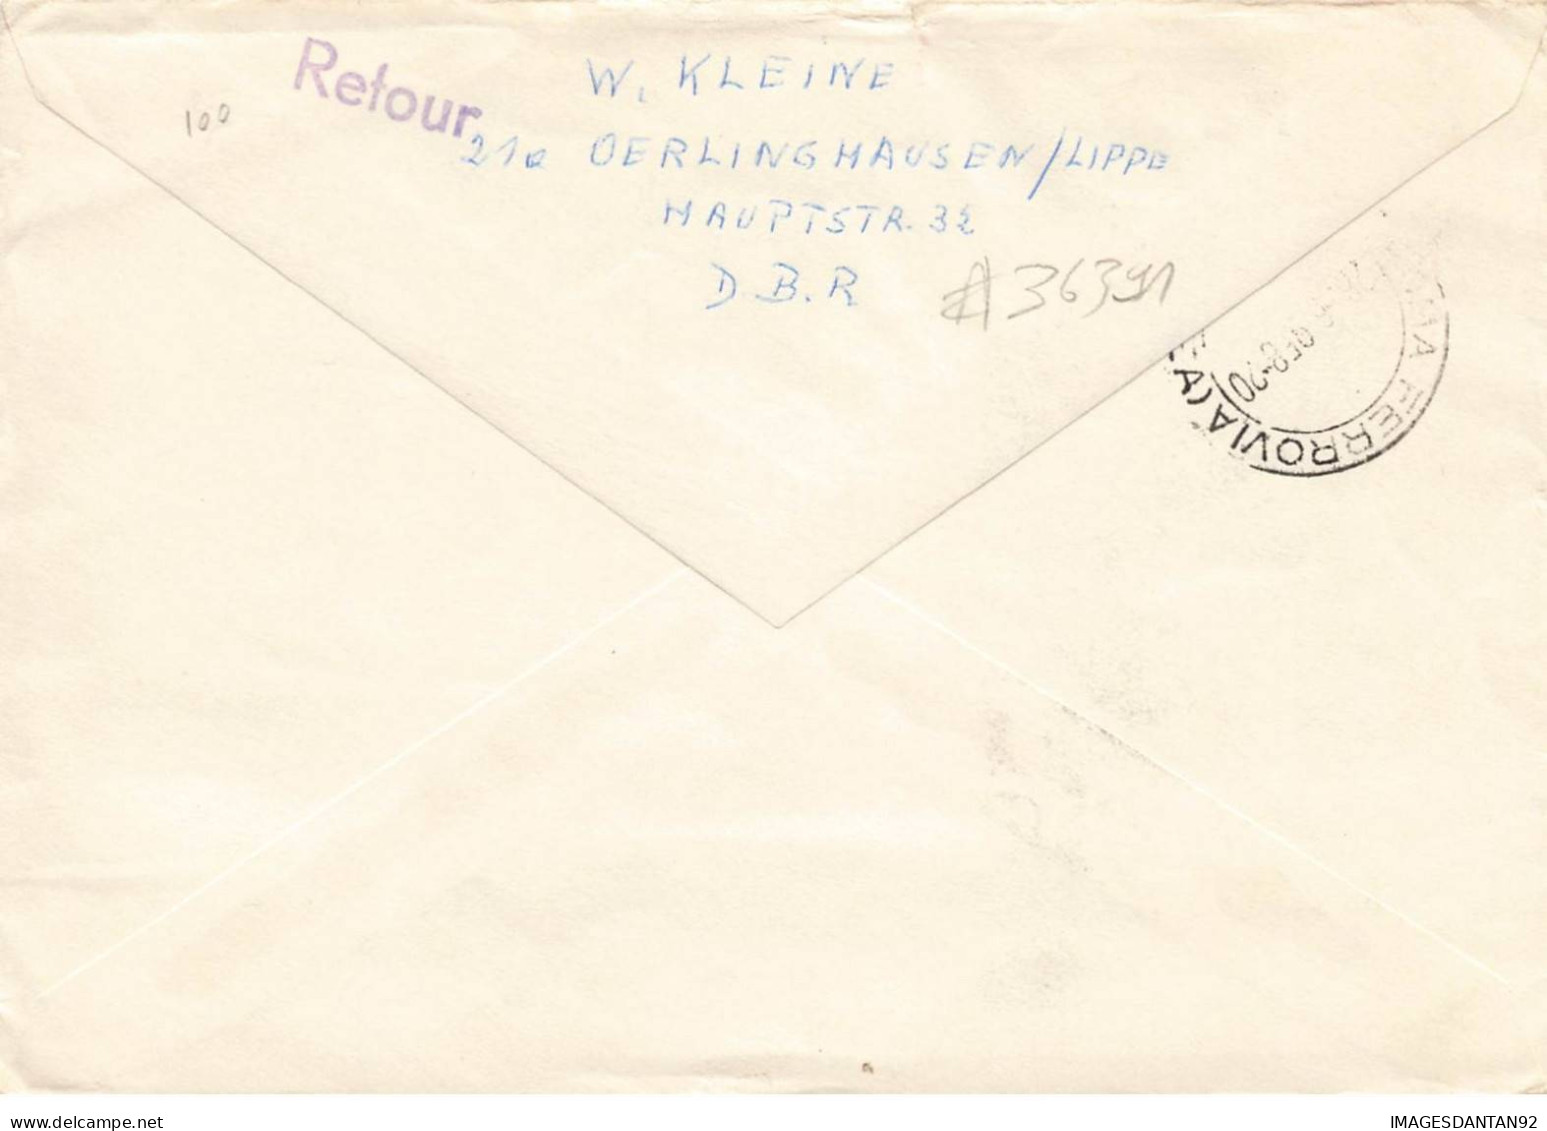 AUTRICHE #36391 MIT FLUGPOST PAR AVION AUSTRIAN AIRLINES WIEN ROM ROME 1958 - Unused Stamps